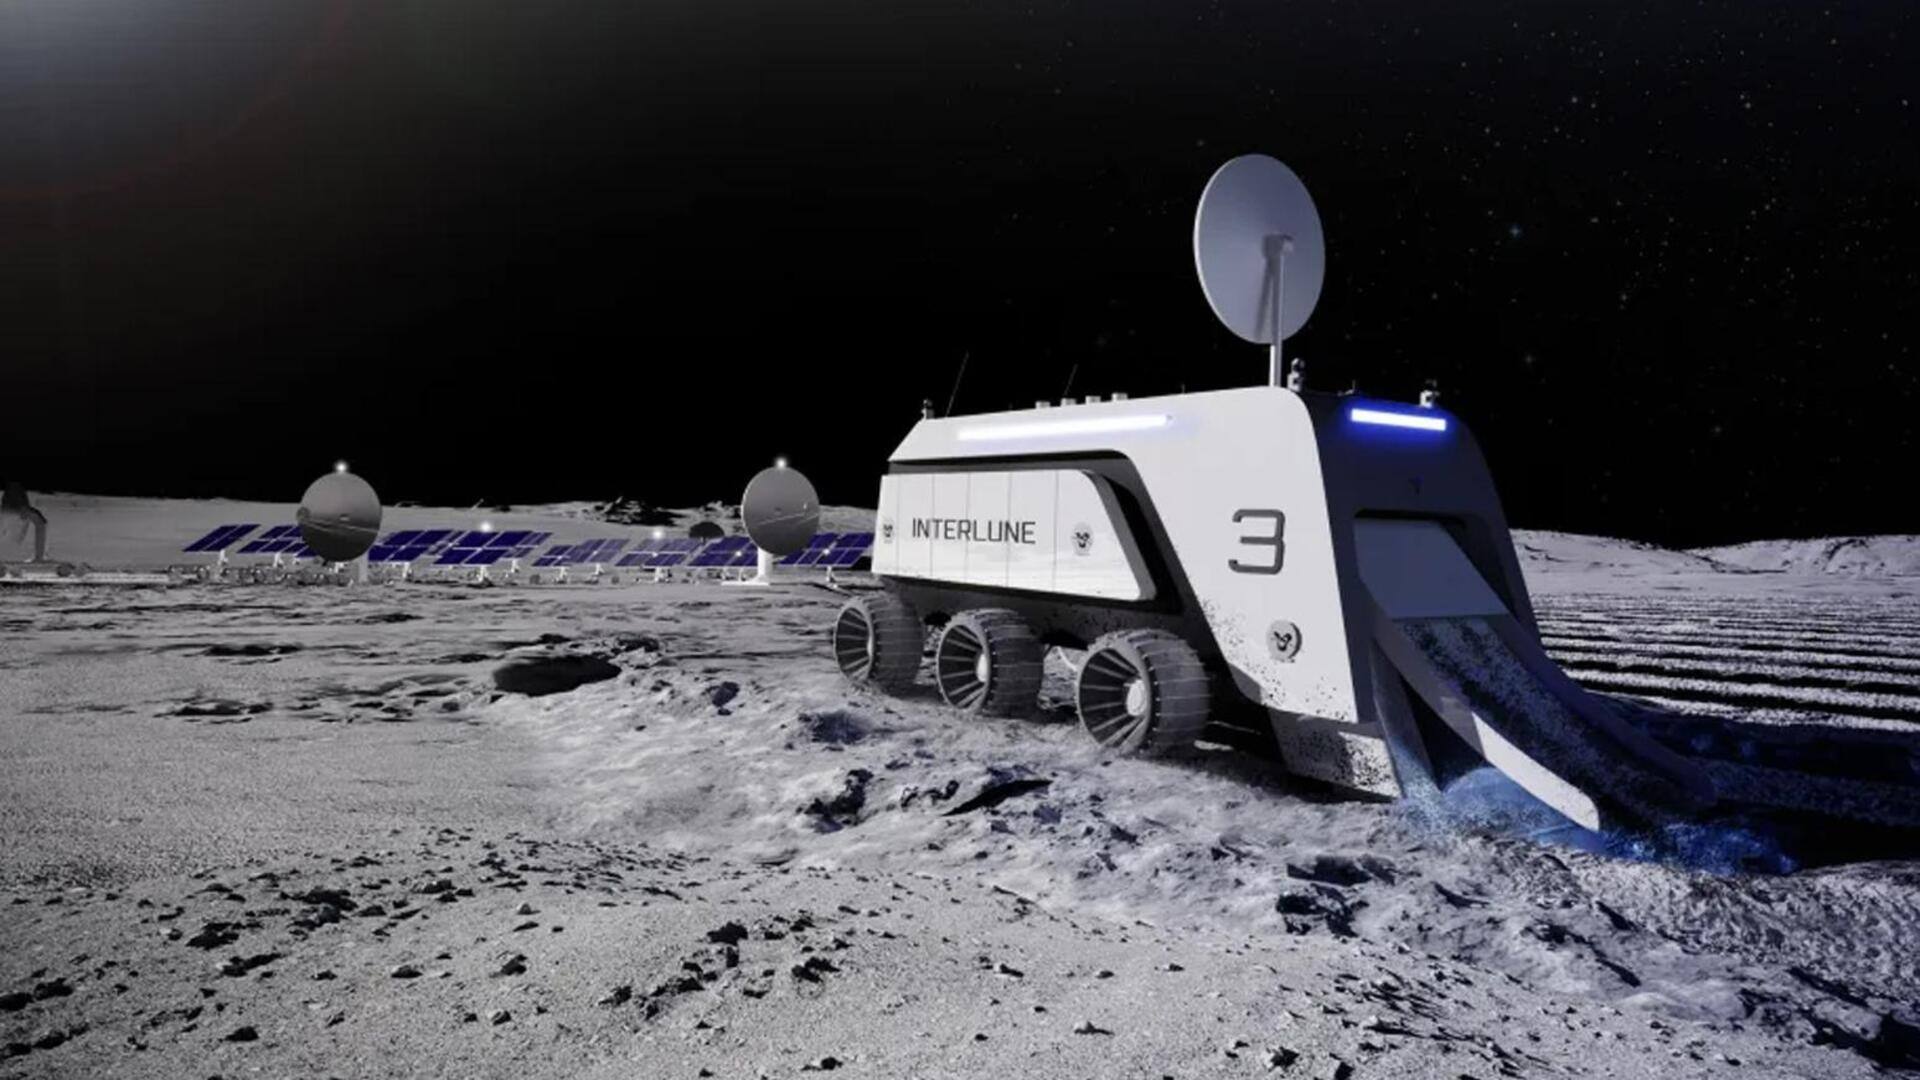 चंद्रमा पर खुदाई करेगी अमेरिकी कंपनी इंटरल्यून, हीलियम-3 के खनन की है योजना 